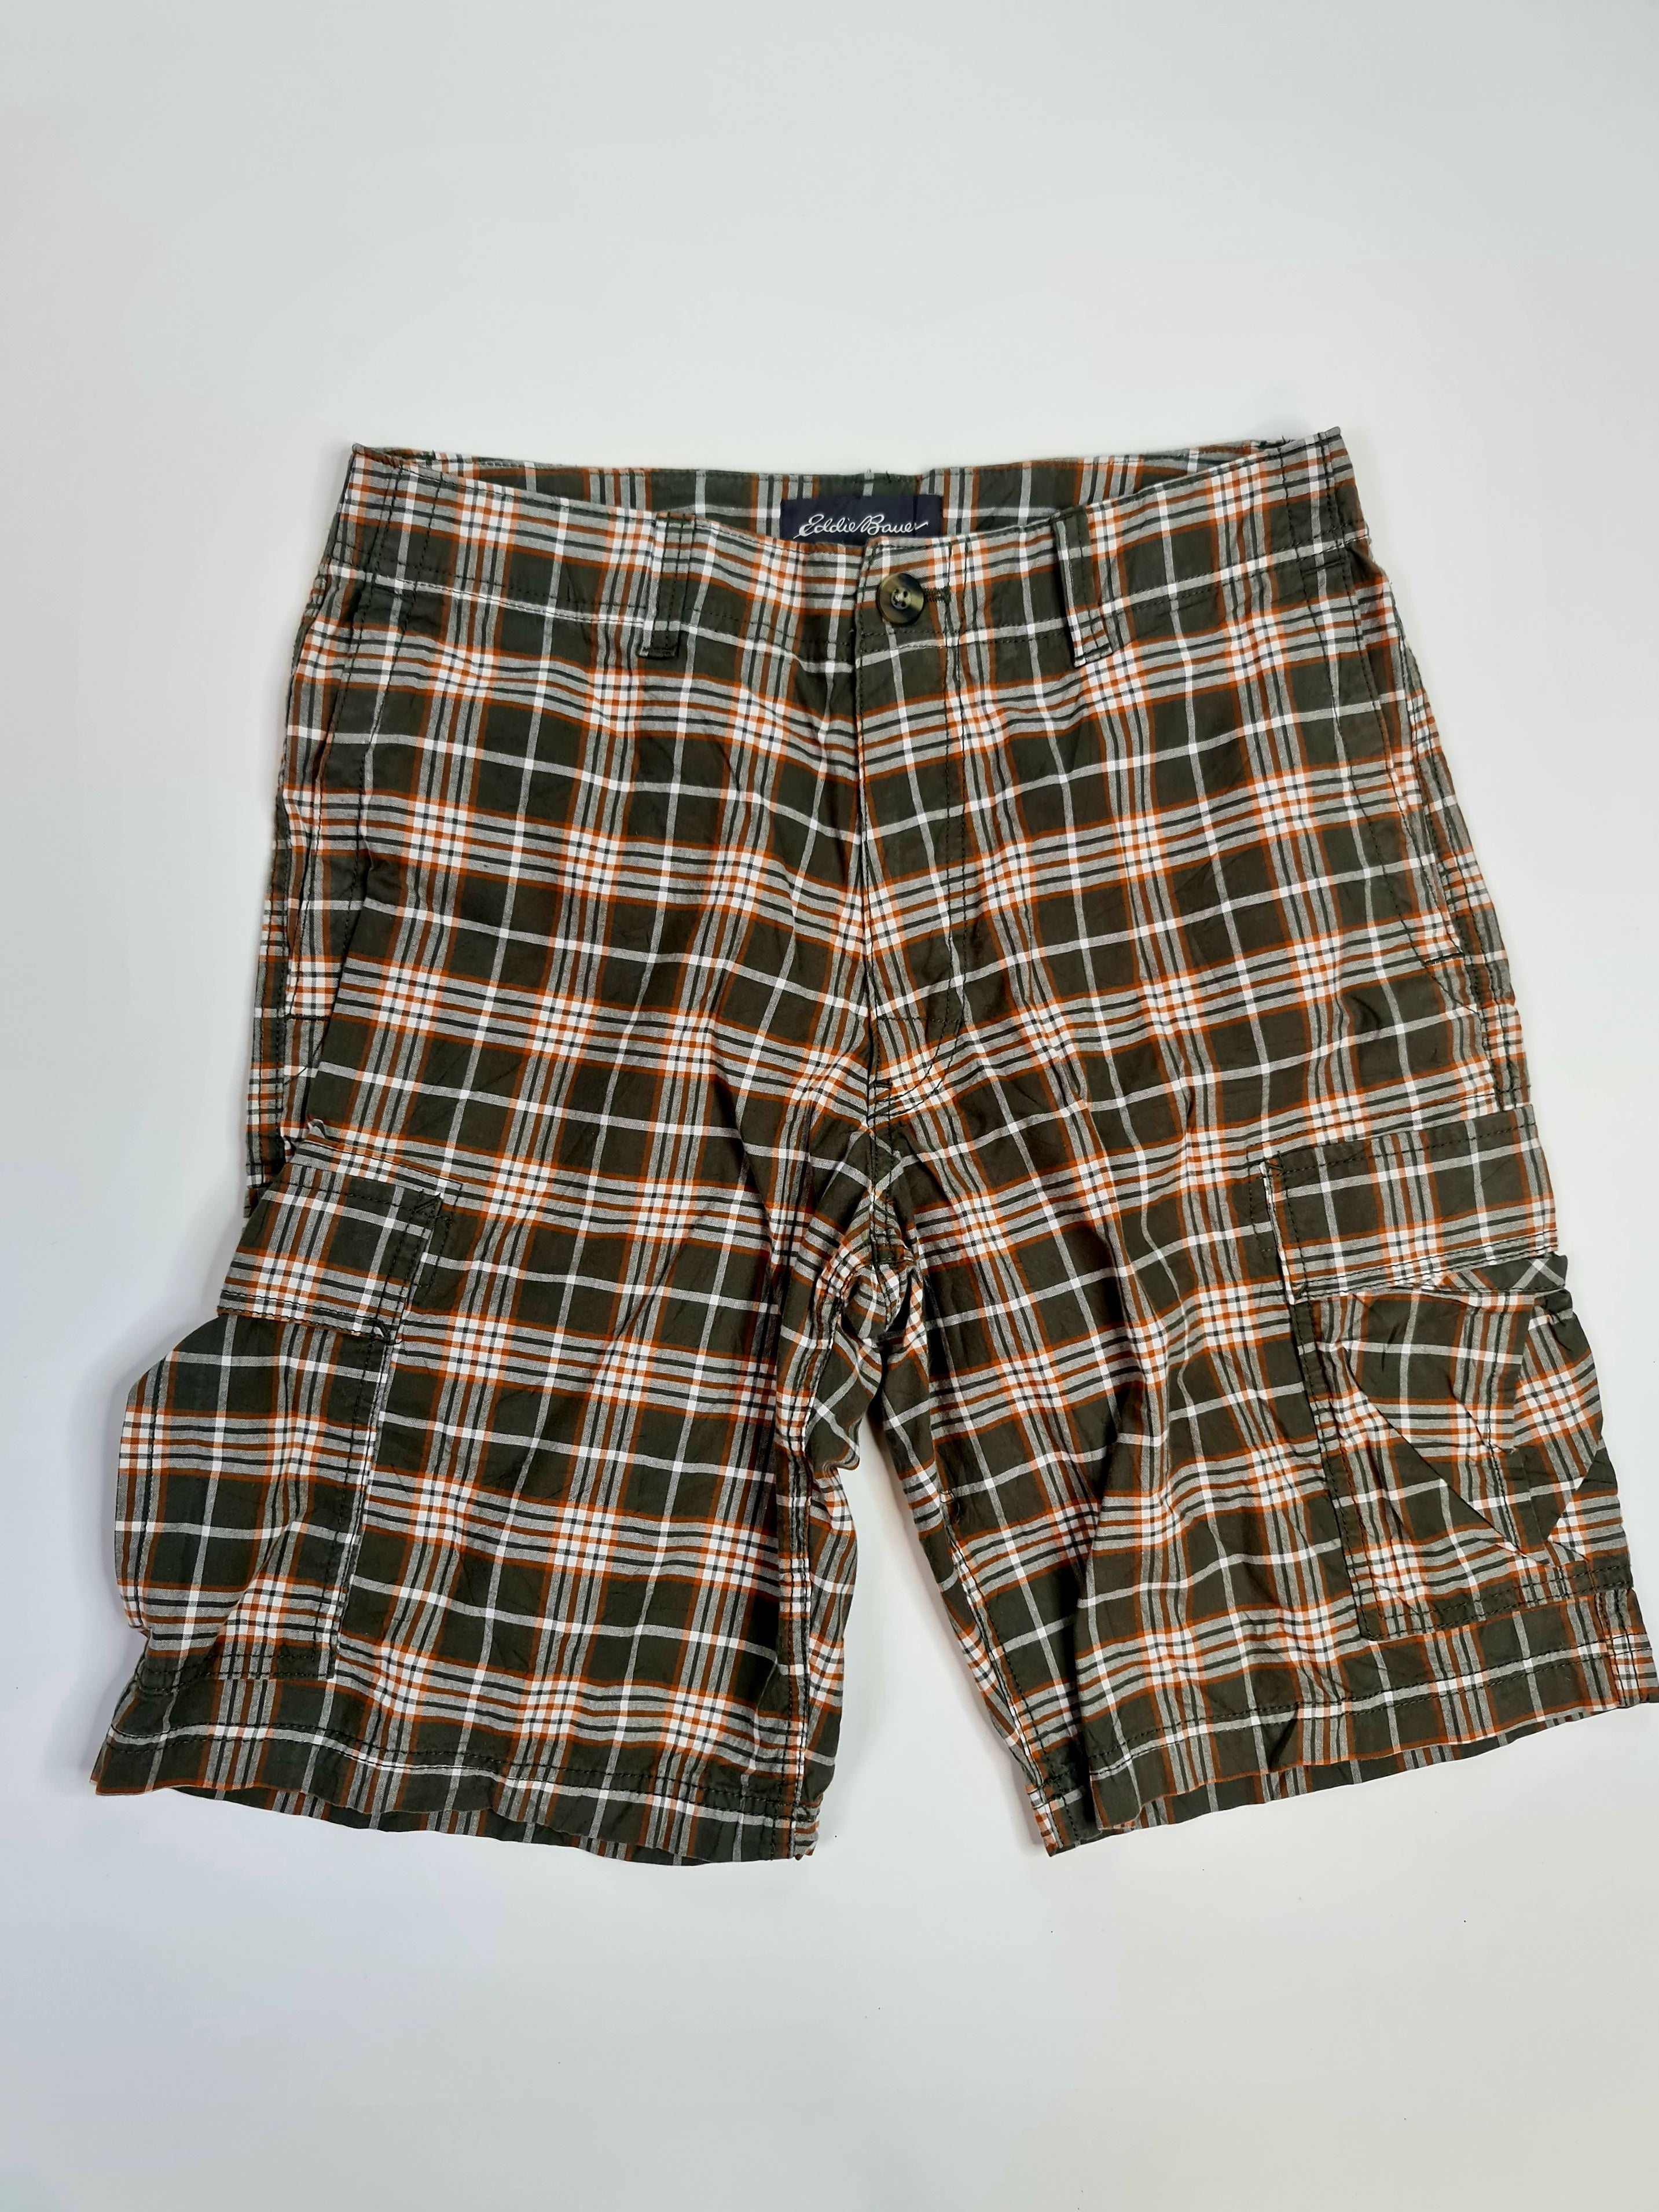 Pantalones cortos marca Eddie Bauer - (Talla: 33)